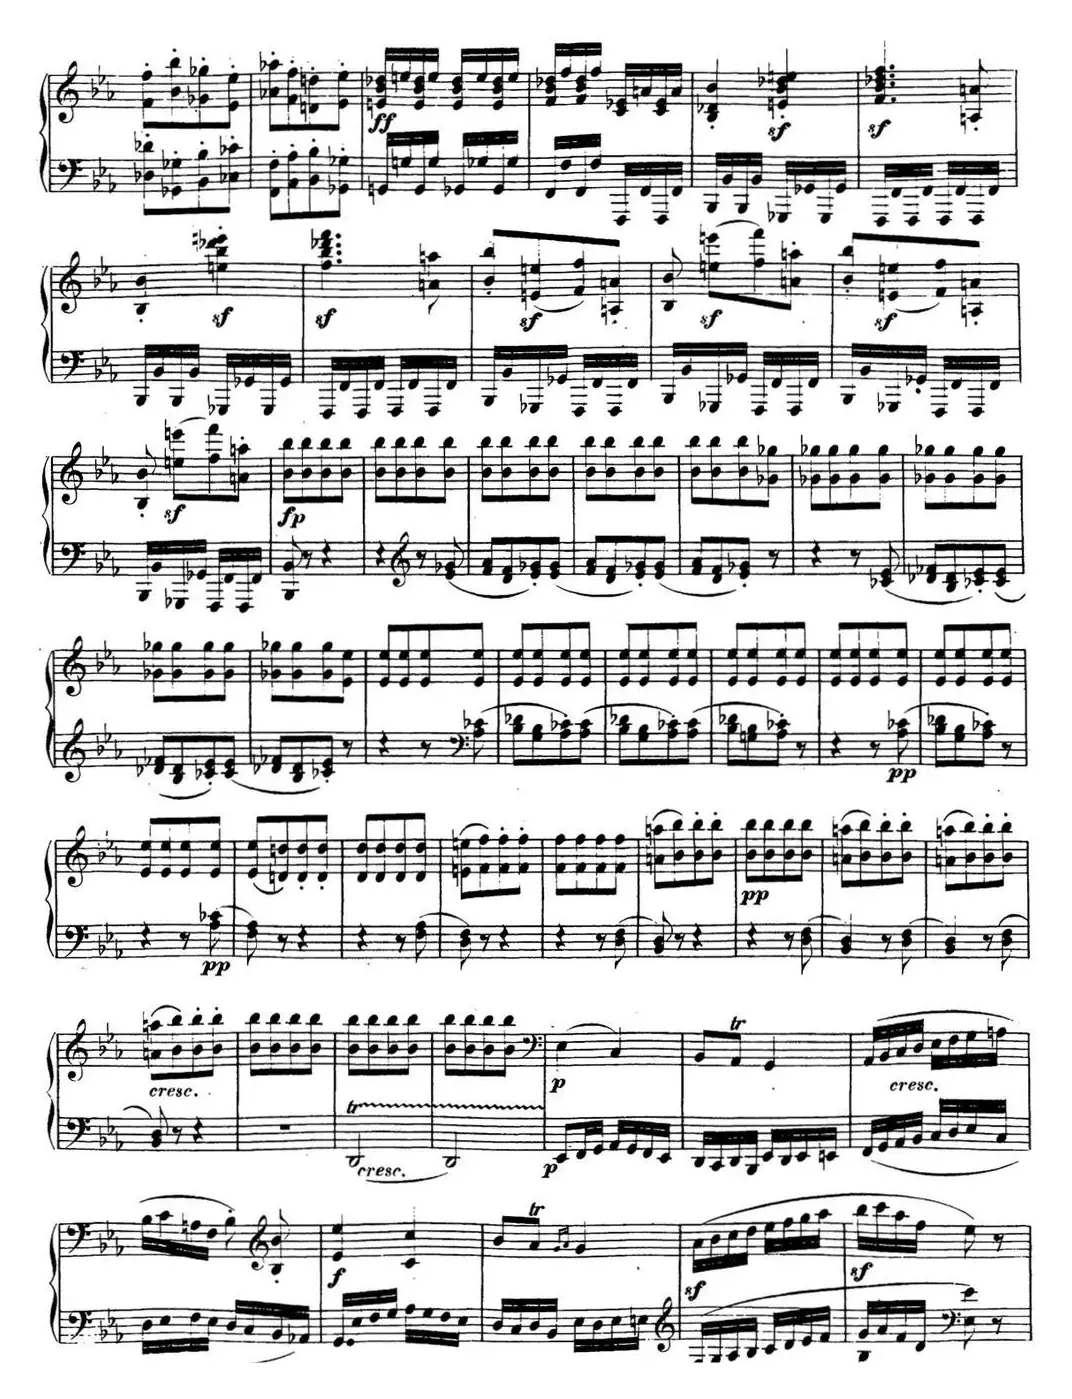 贝多芬钢琴奏鸣曲13 幻想奏鸣曲 降E大调 Op.27 No.1 E-flat major